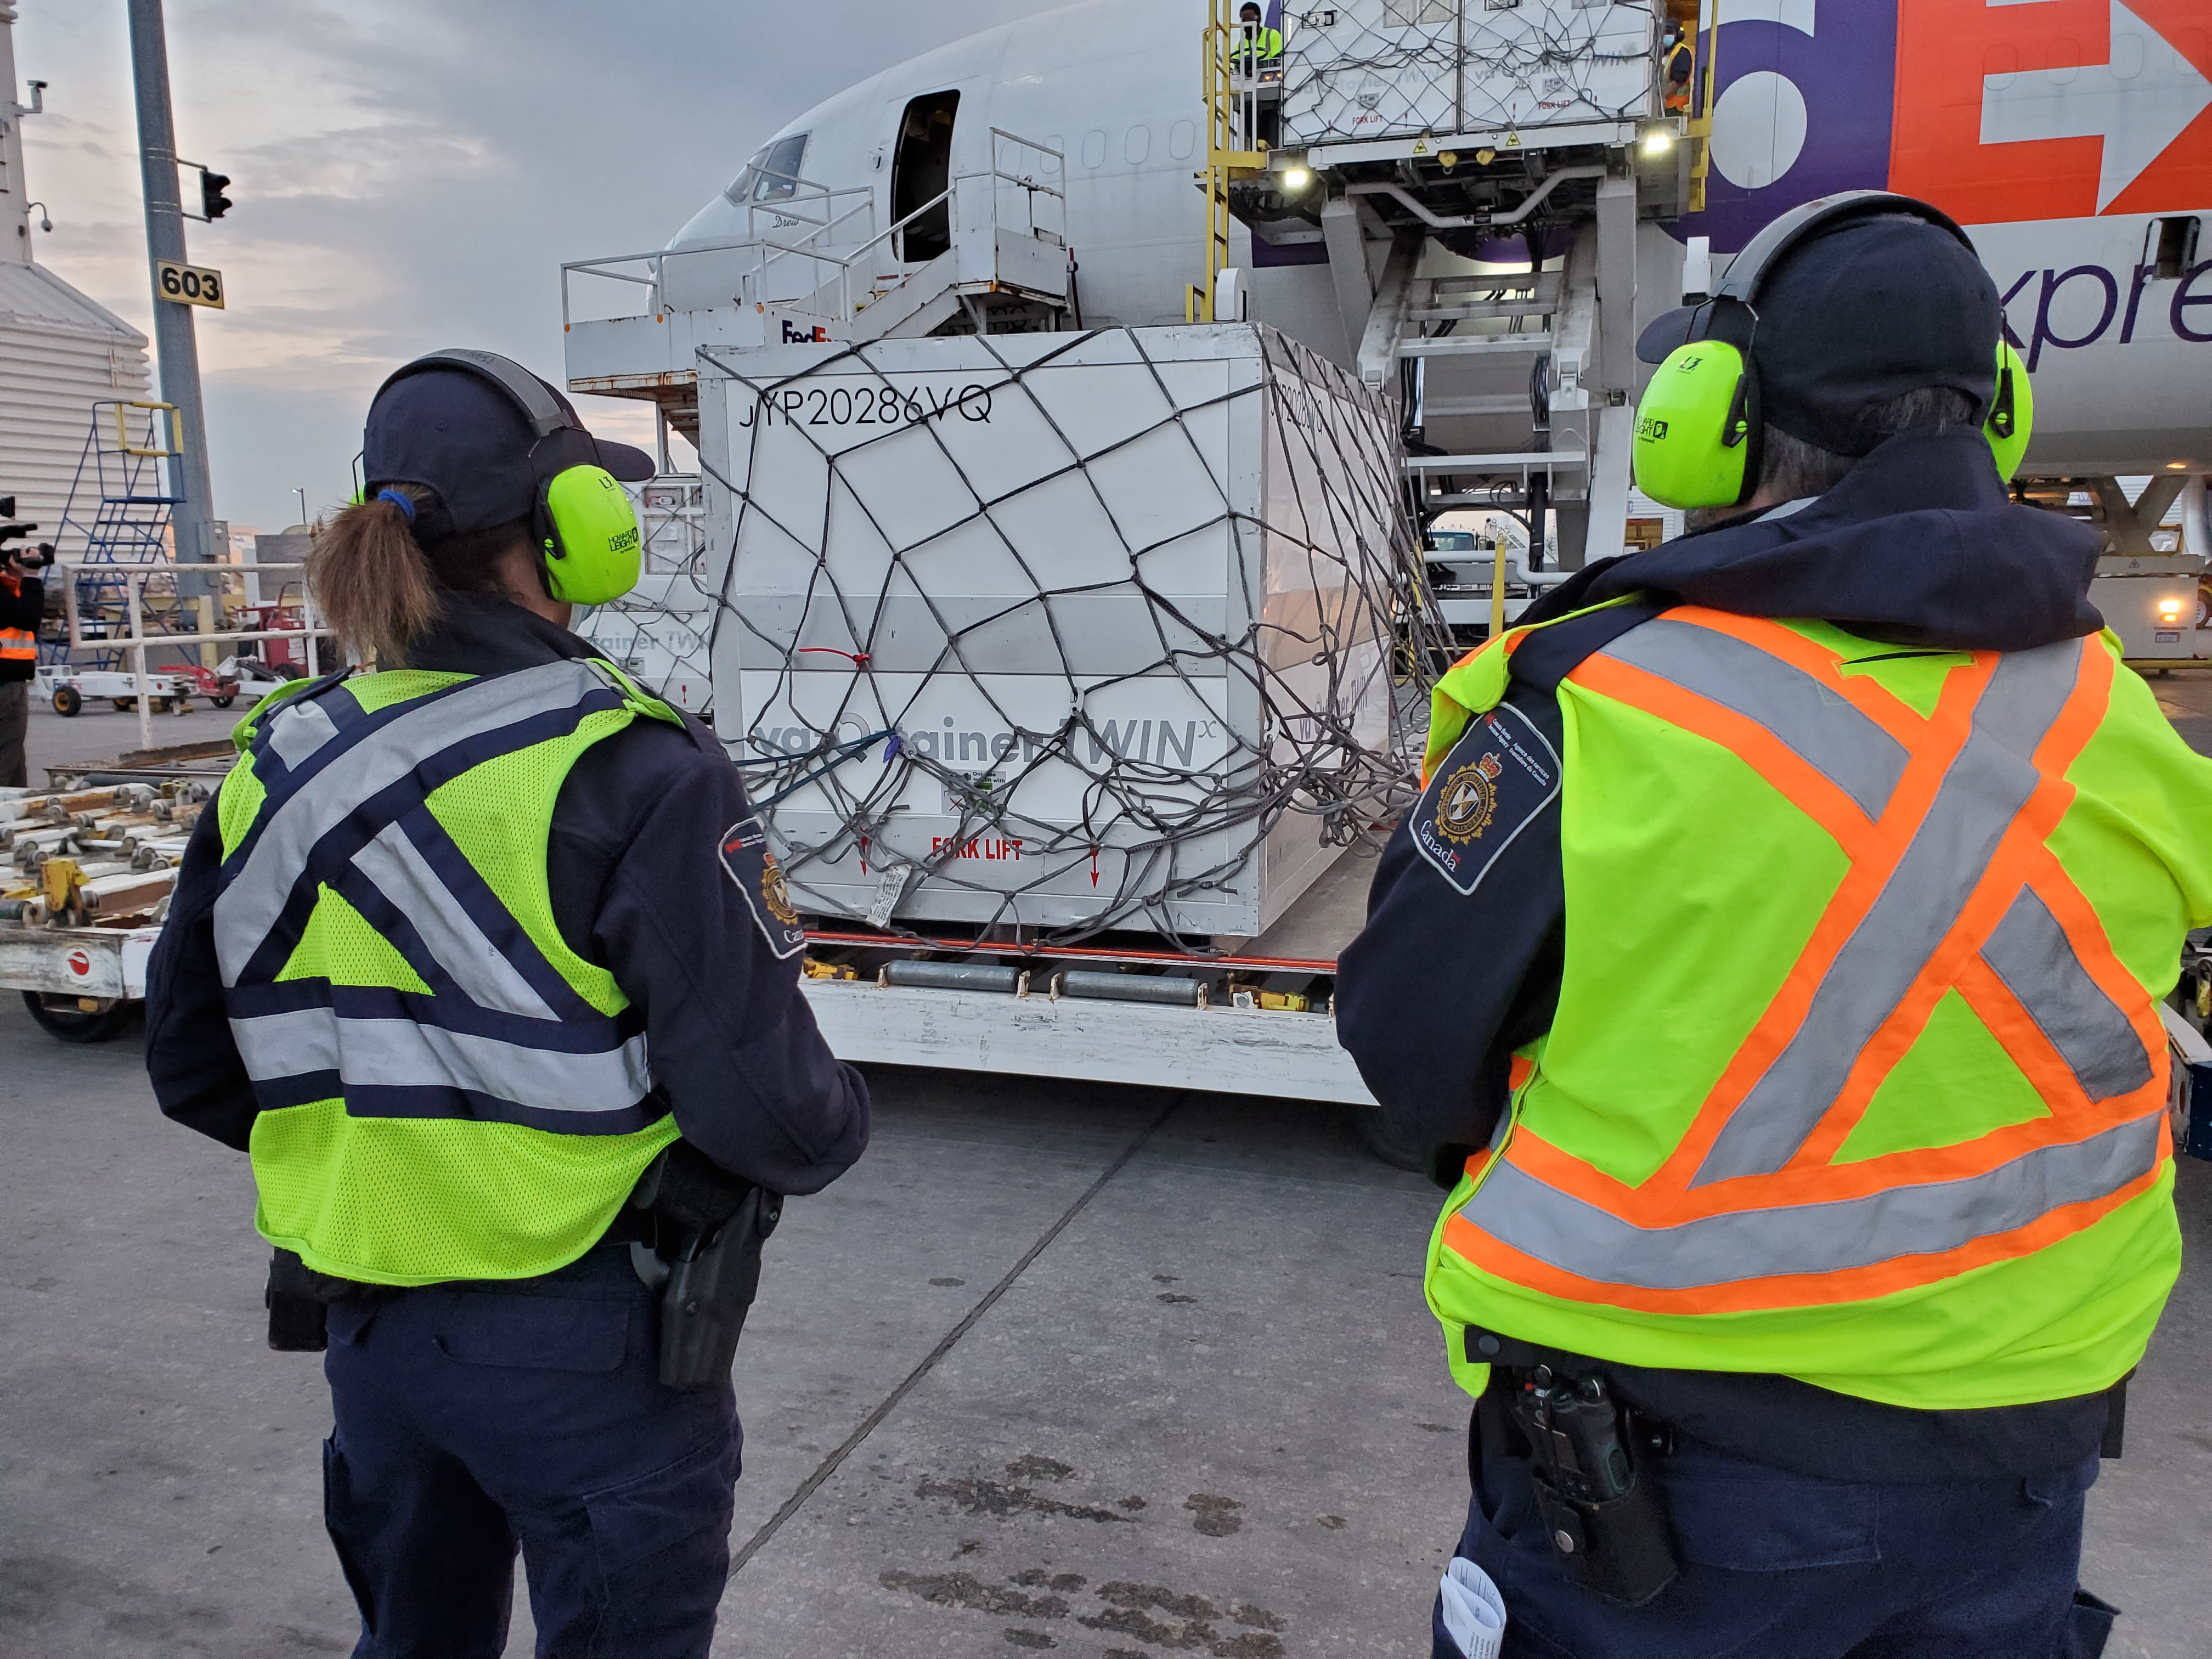 Employés portant des gilets de sécurité observent la descente d’une cargaison de vaccins d’un avion vers l’aire de trafic